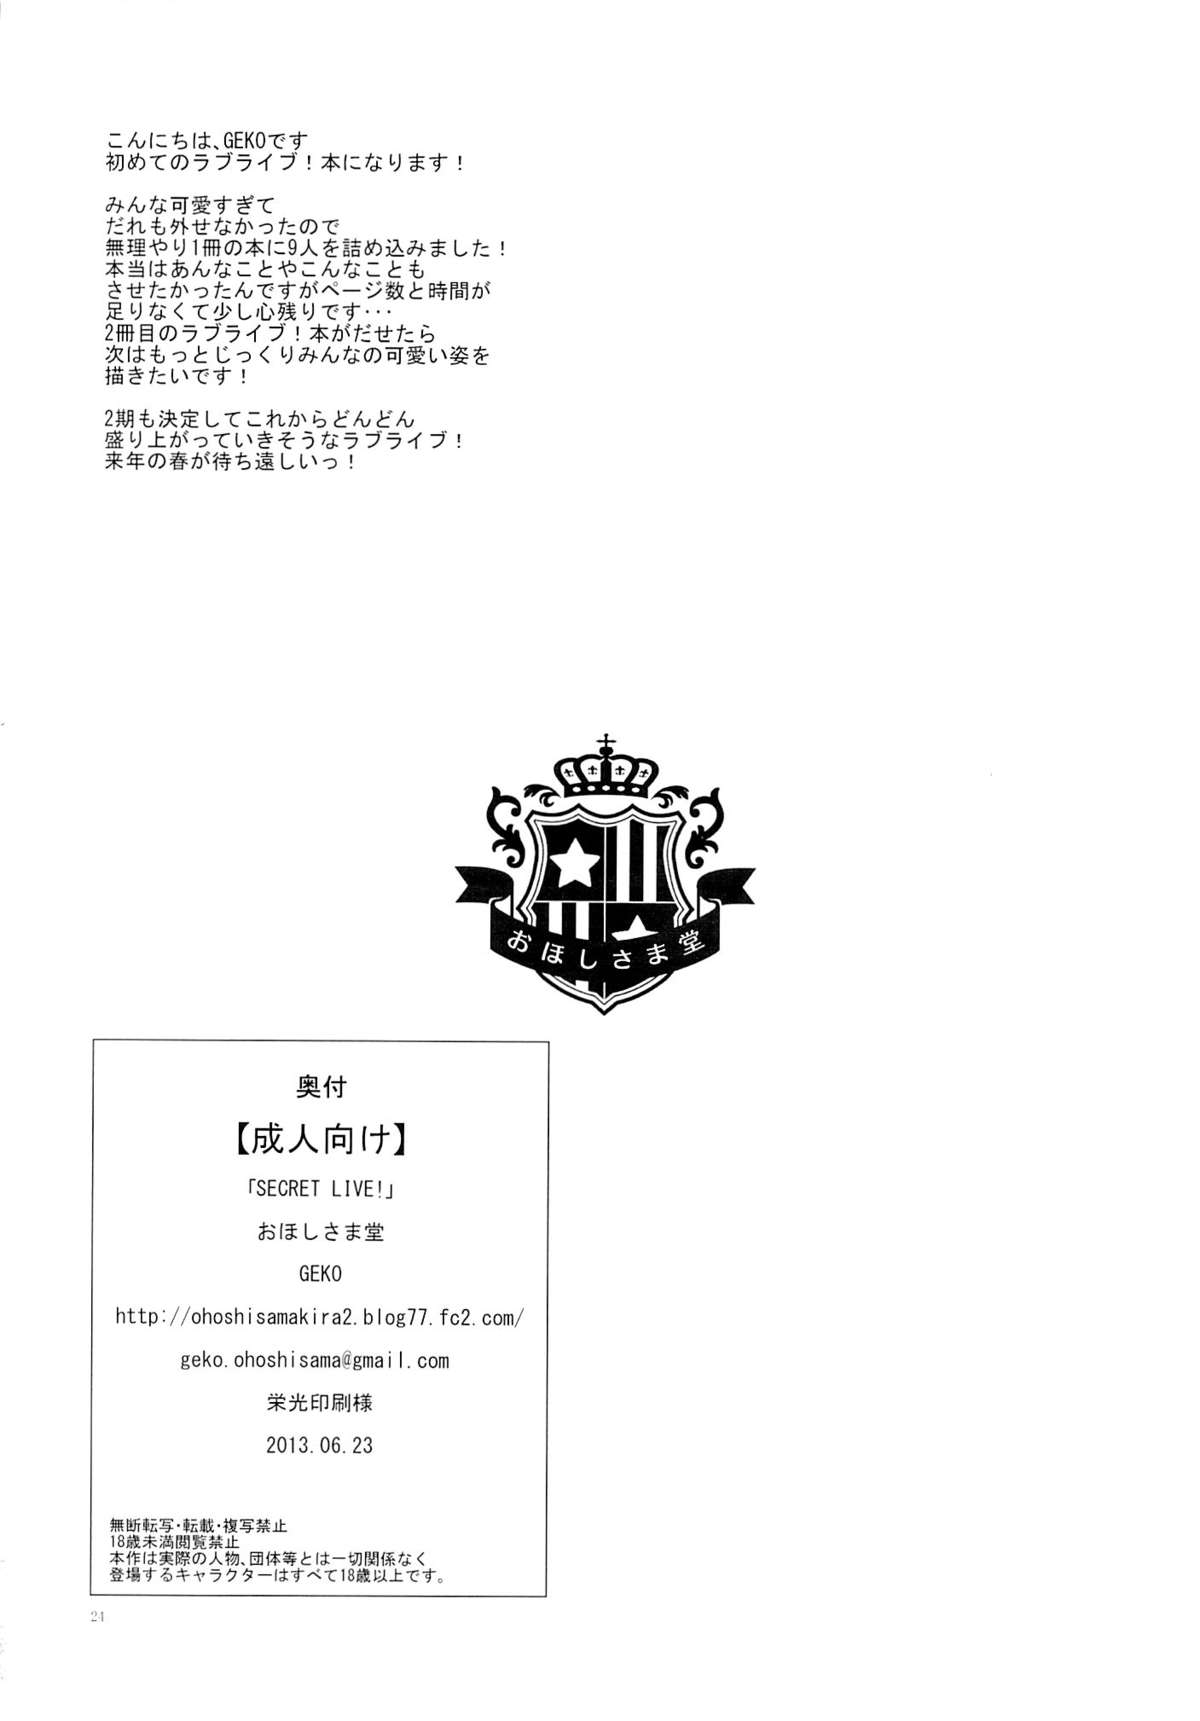 (サンクリ60) [おほしさま堂 (GEKO)] SECRET LIVE! (ラブライブ!)